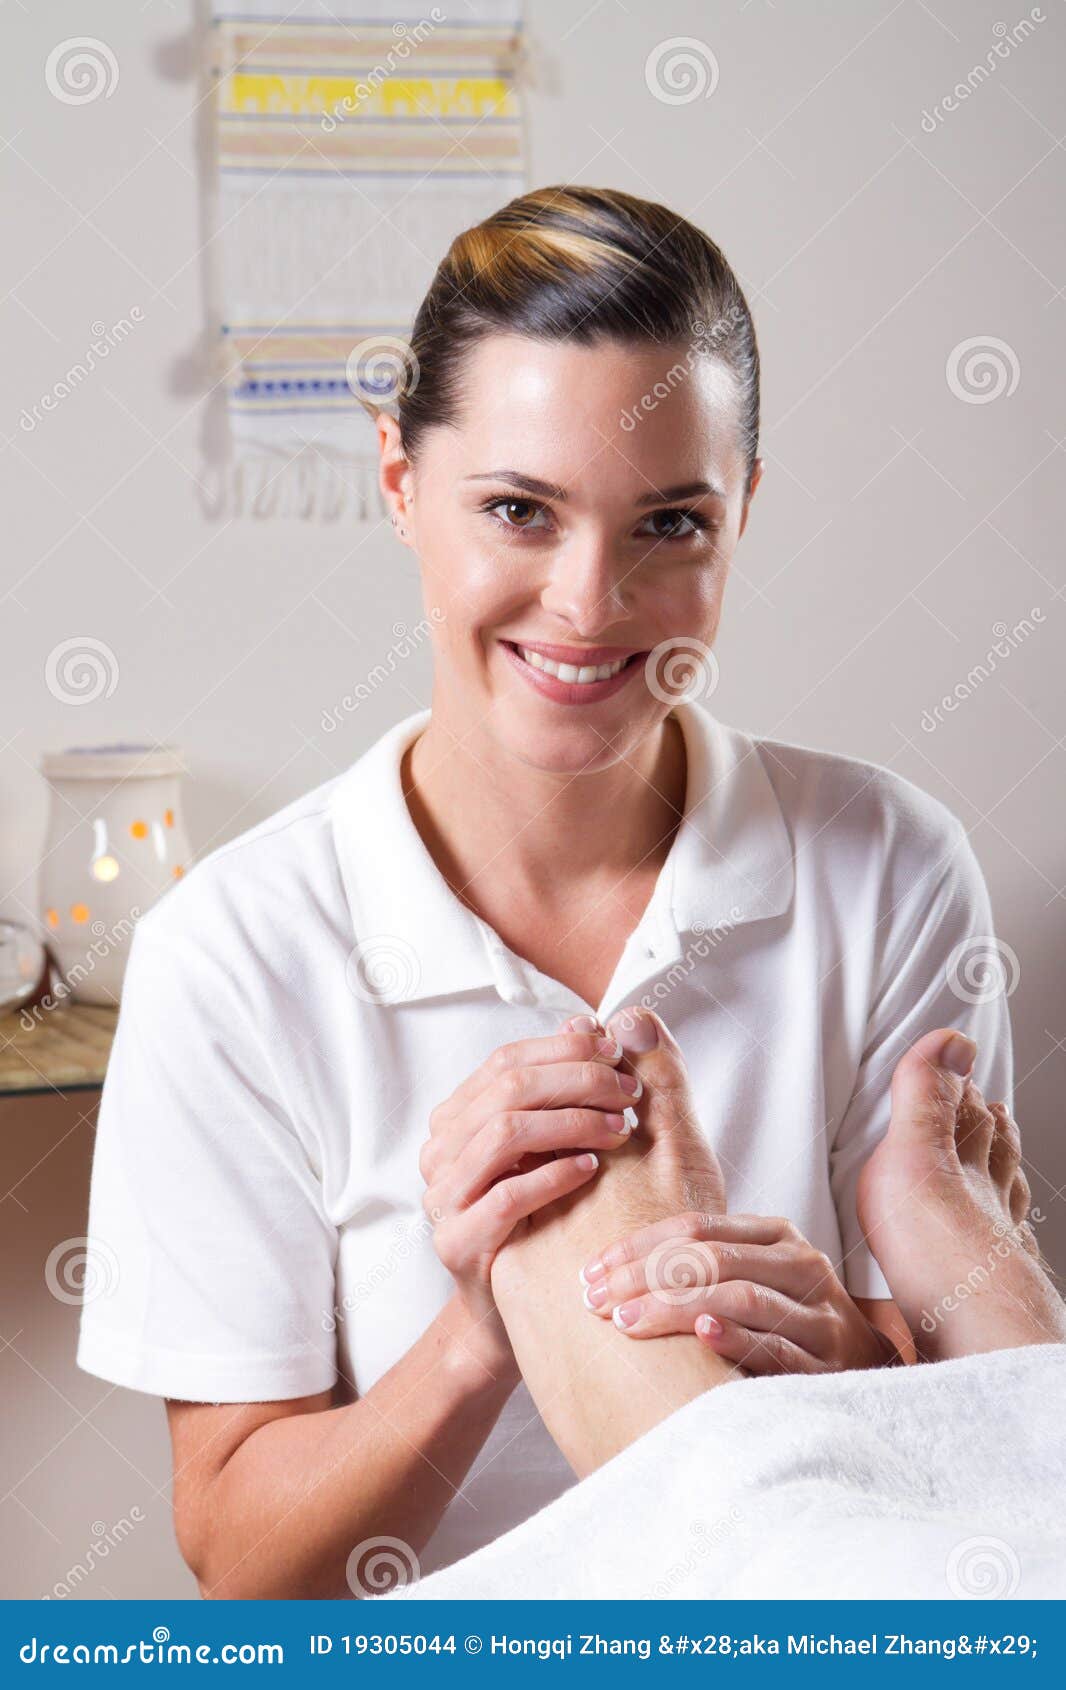 Professional masseuse ready 58864